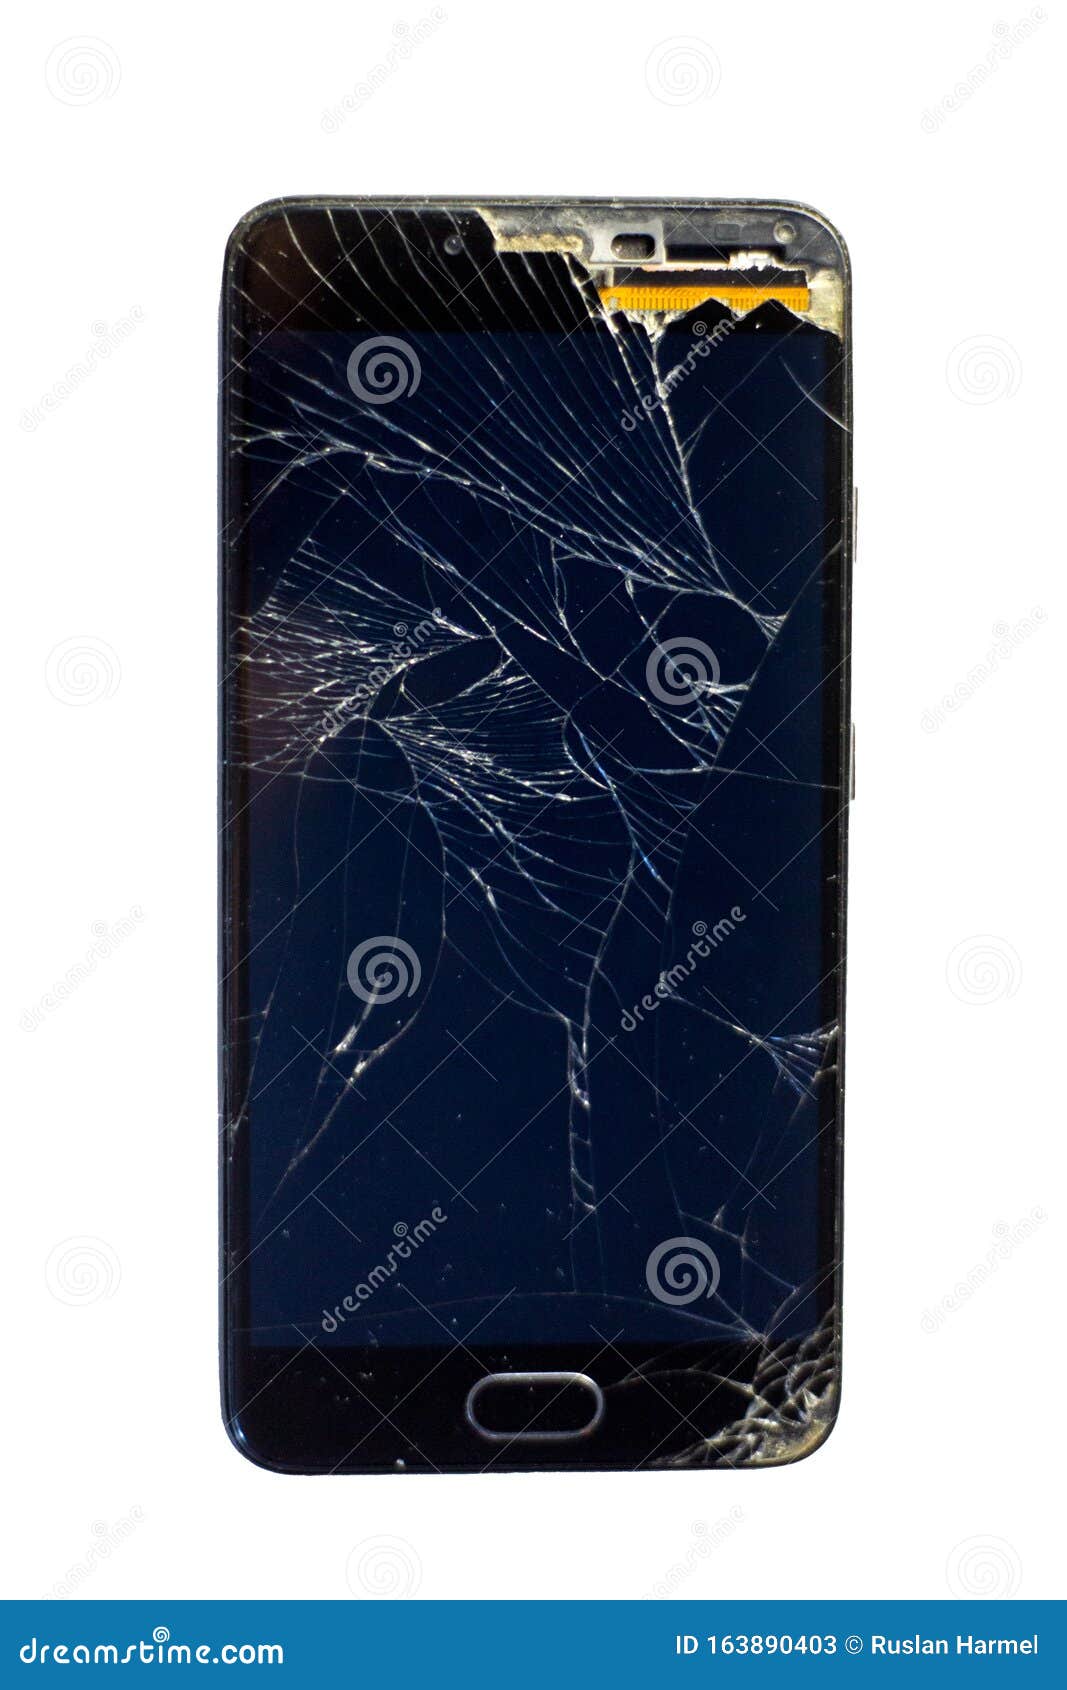 手机碎屏图片真实,手机坏屏图片大全 - 伤感说说吧